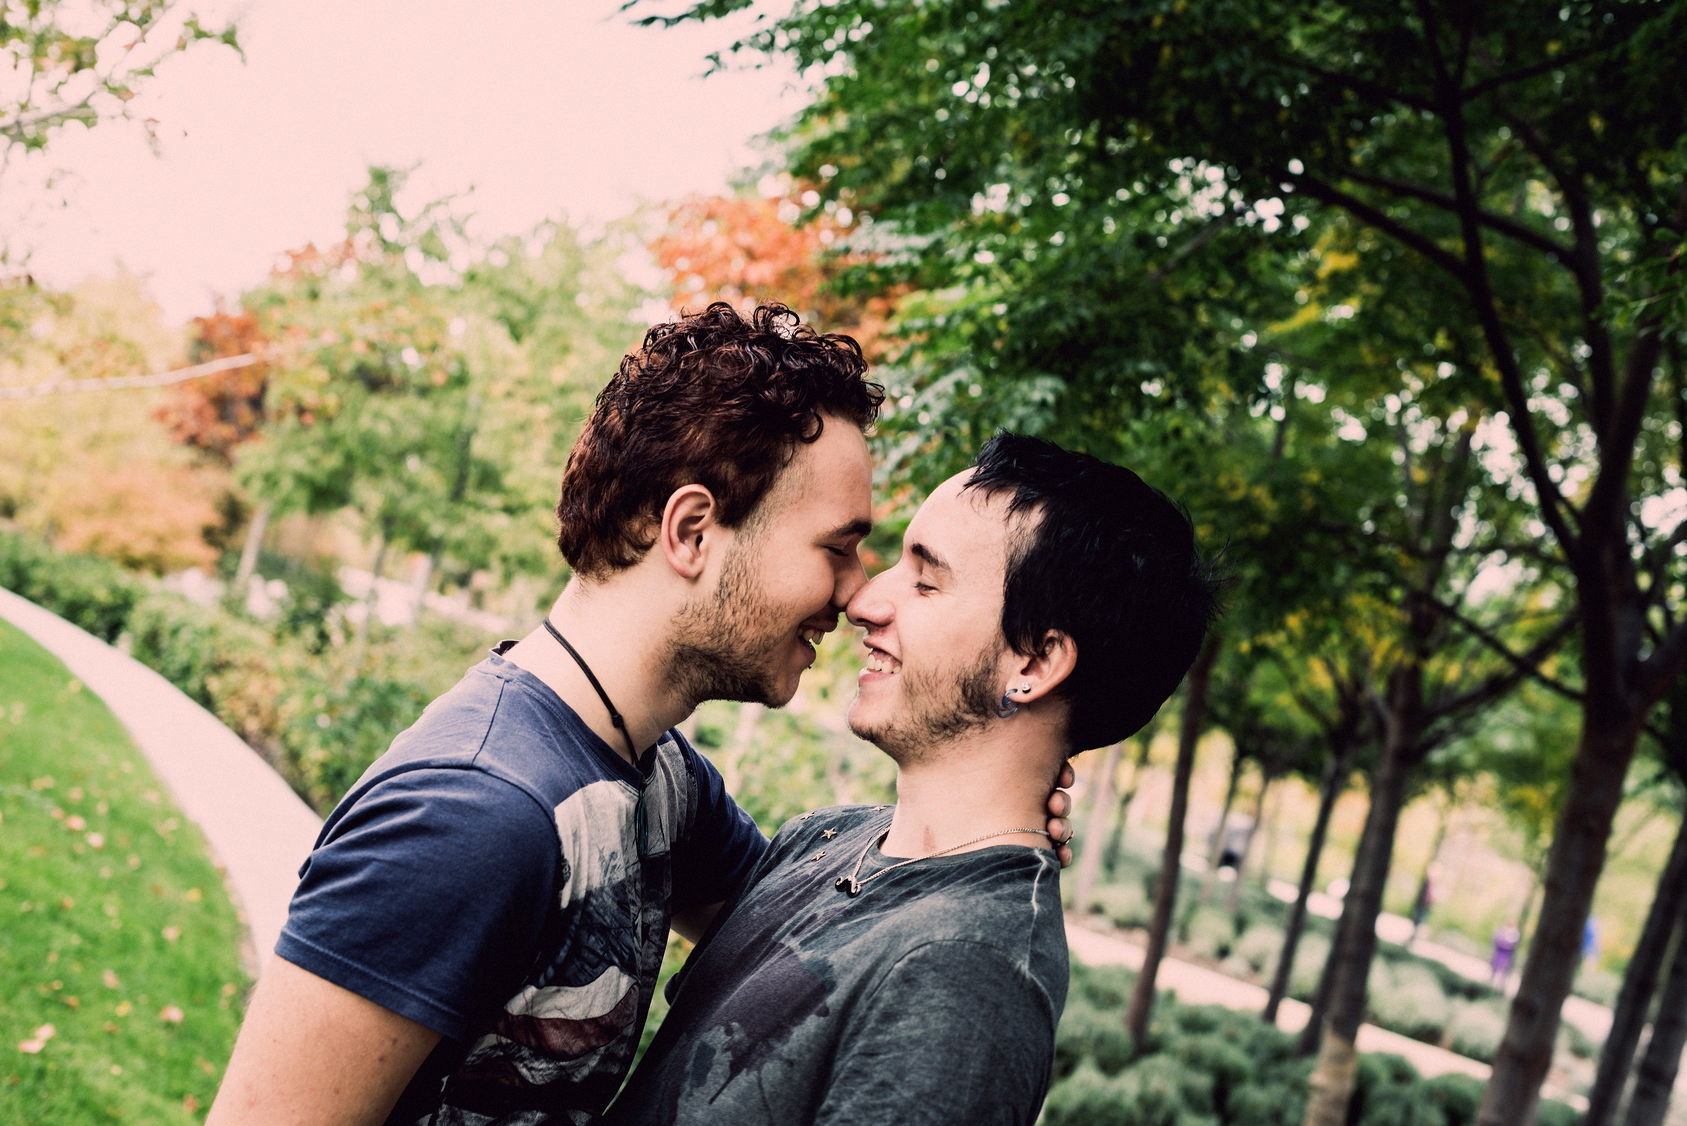 Homophobie, hétérosexisme et discrimination : Pistes et solutions pour démystifier l'homosexualité